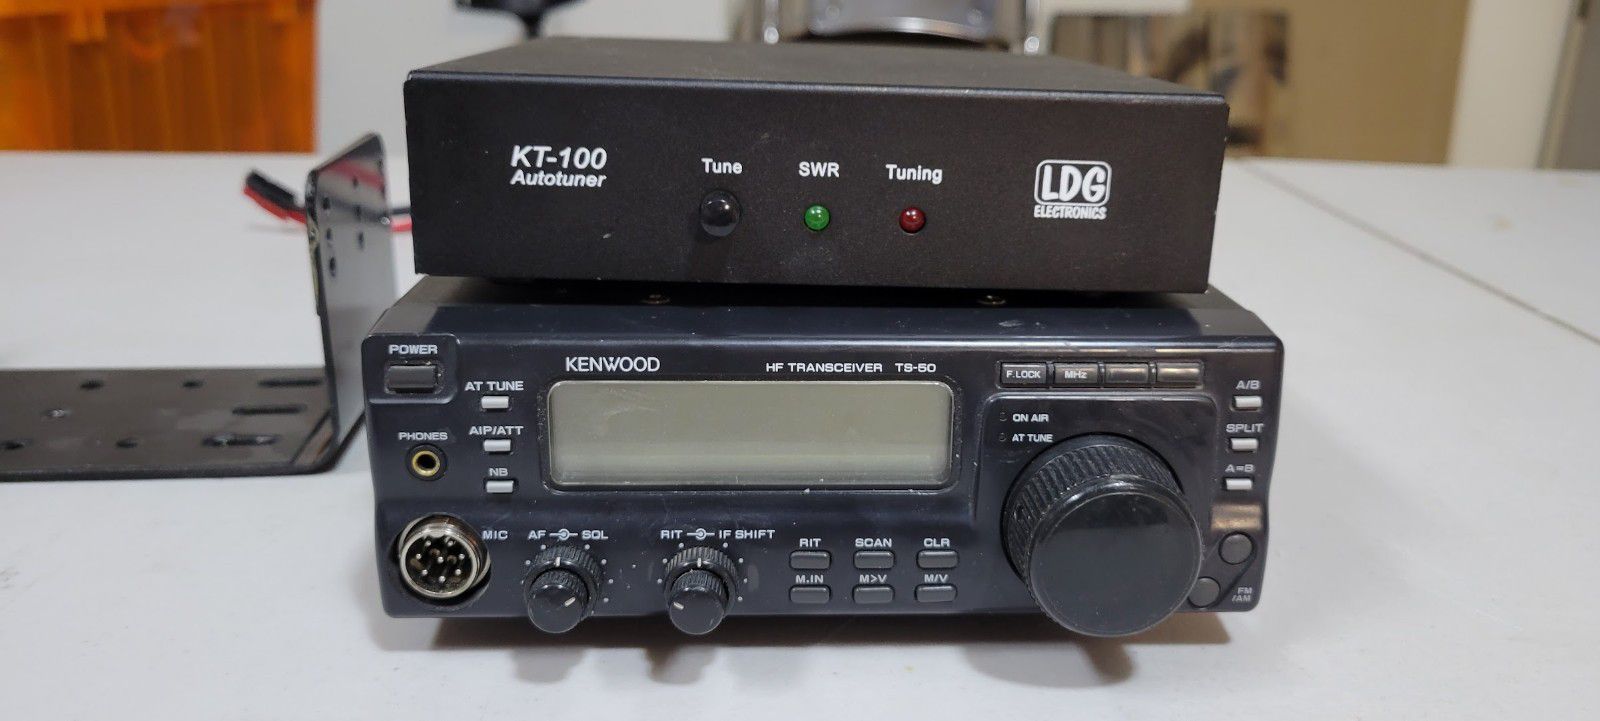 Kenwood TS-50S and LDG KT-100 Autotuner 